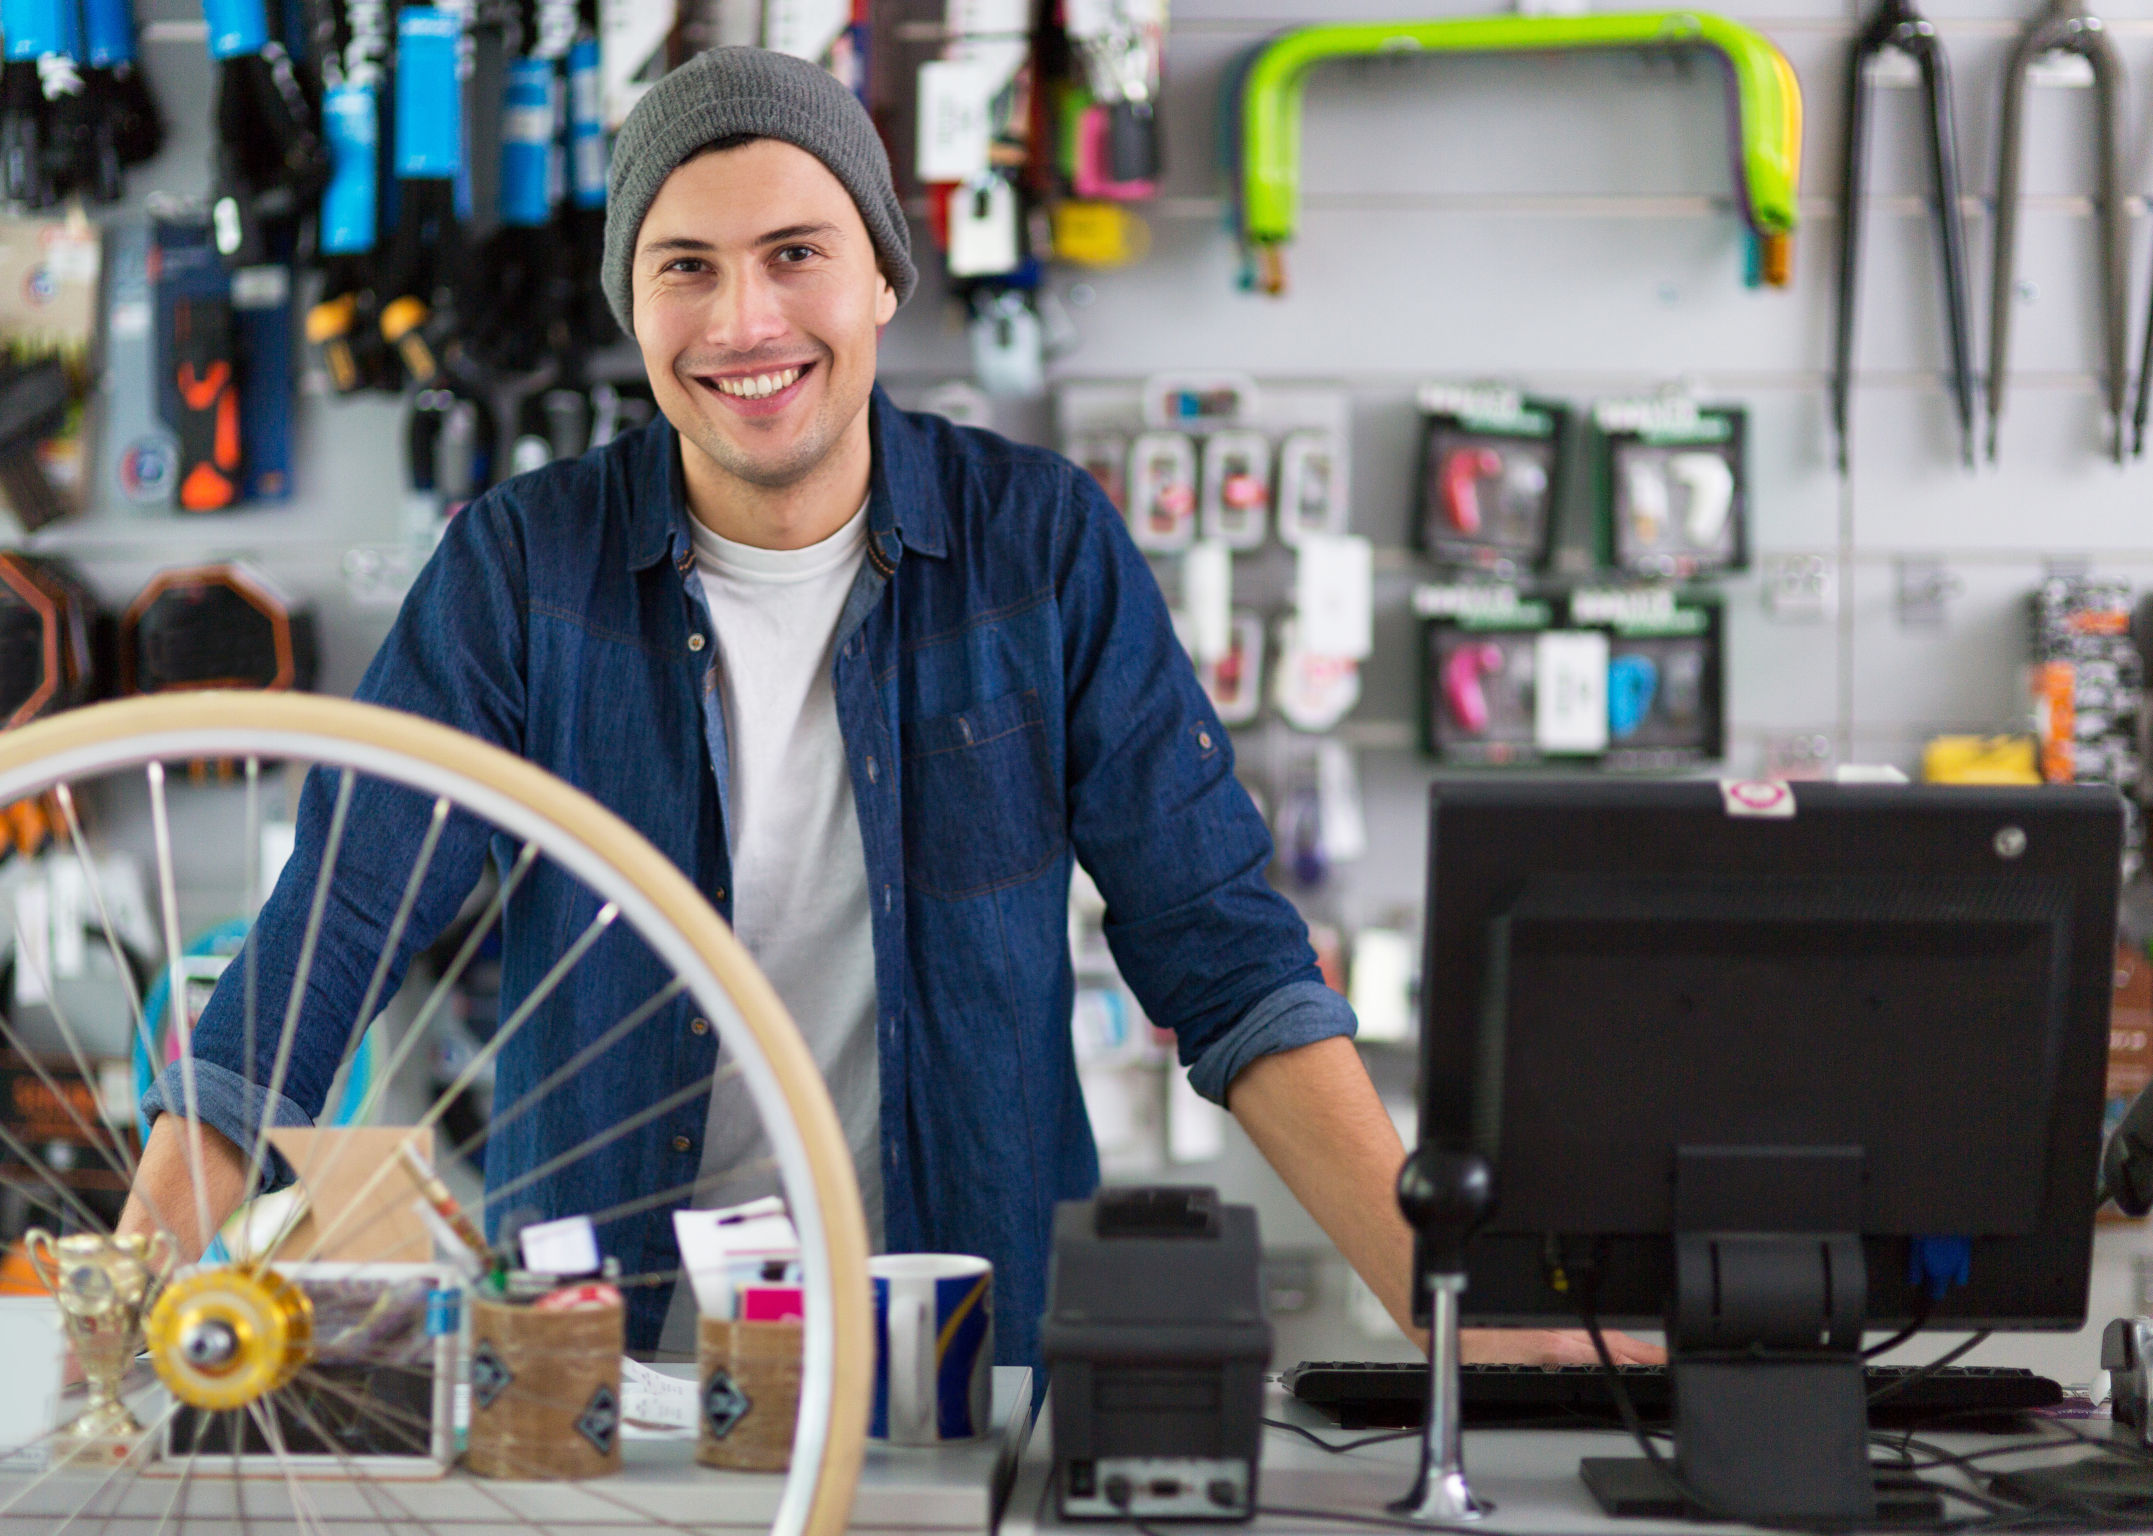 Ein Mann steht in einem Fahrradgeschäft lächelnd hinter dem Tresen. Im Vordergrund ist ein Reifen und ein Desktop zu sehen.